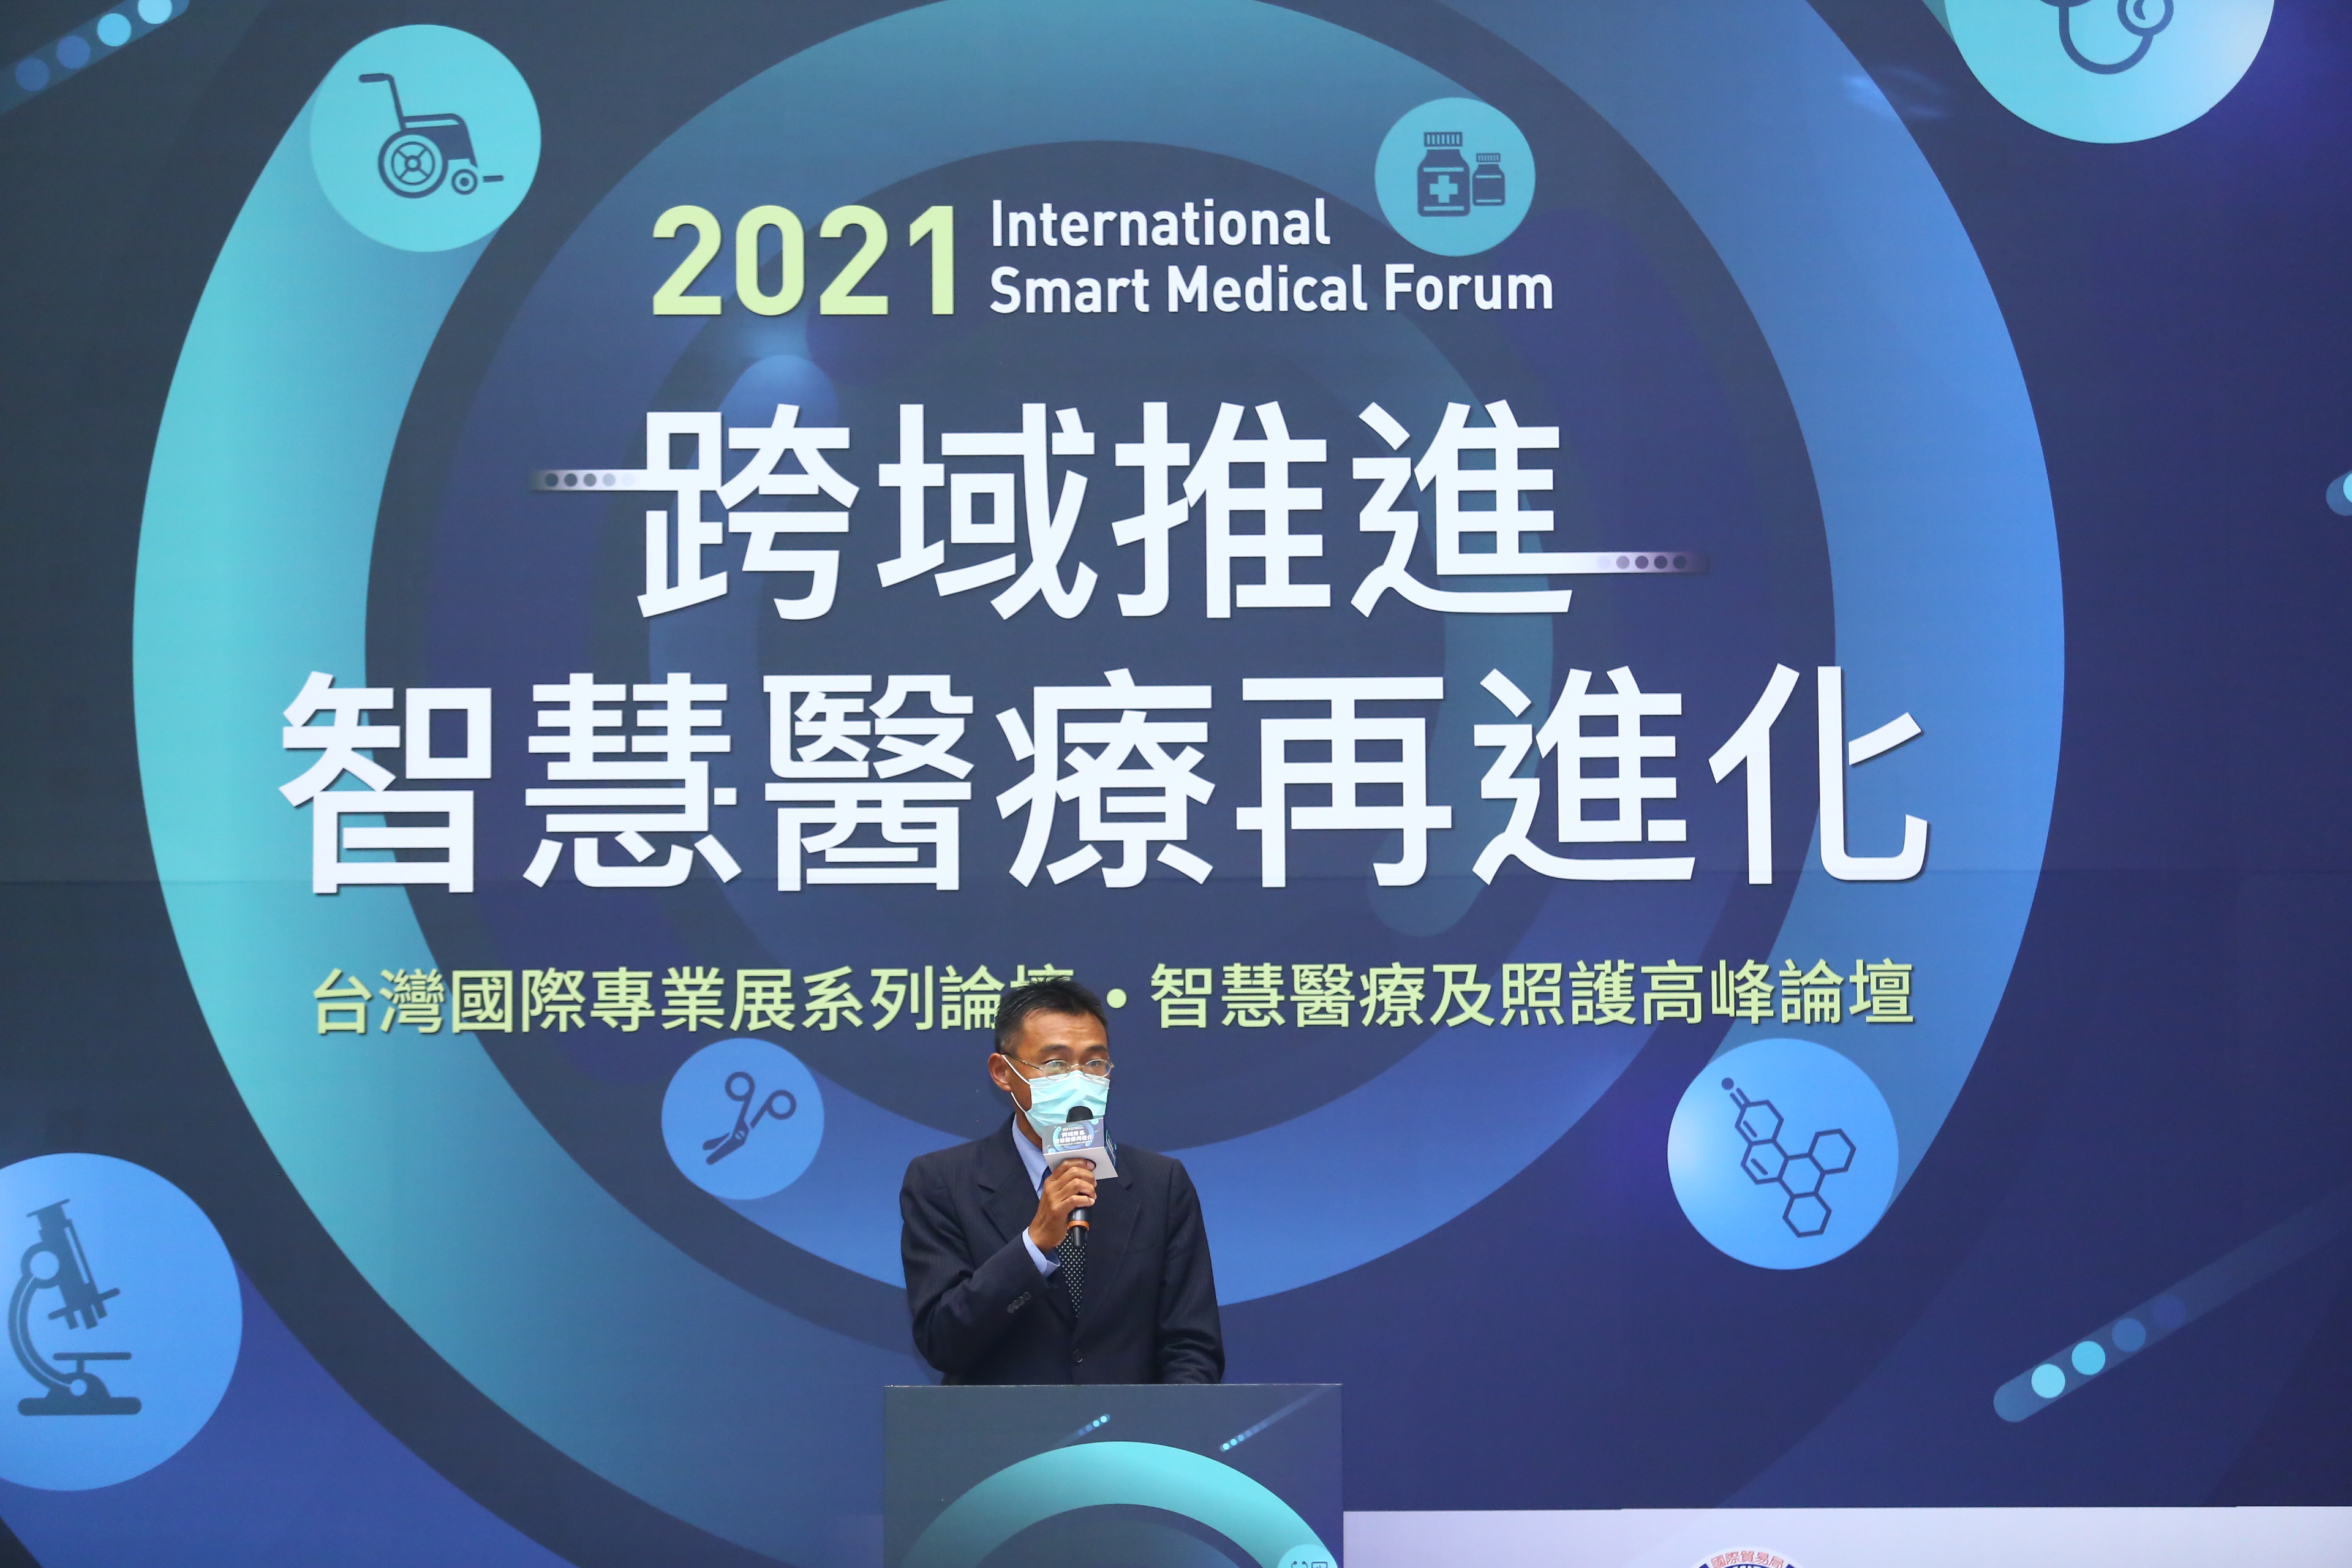 由經濟部國際貿易局主辦的2021年智慧醫療及照護高峰論壇於10月14日星期四在台北南港展覽館2館舉行。02